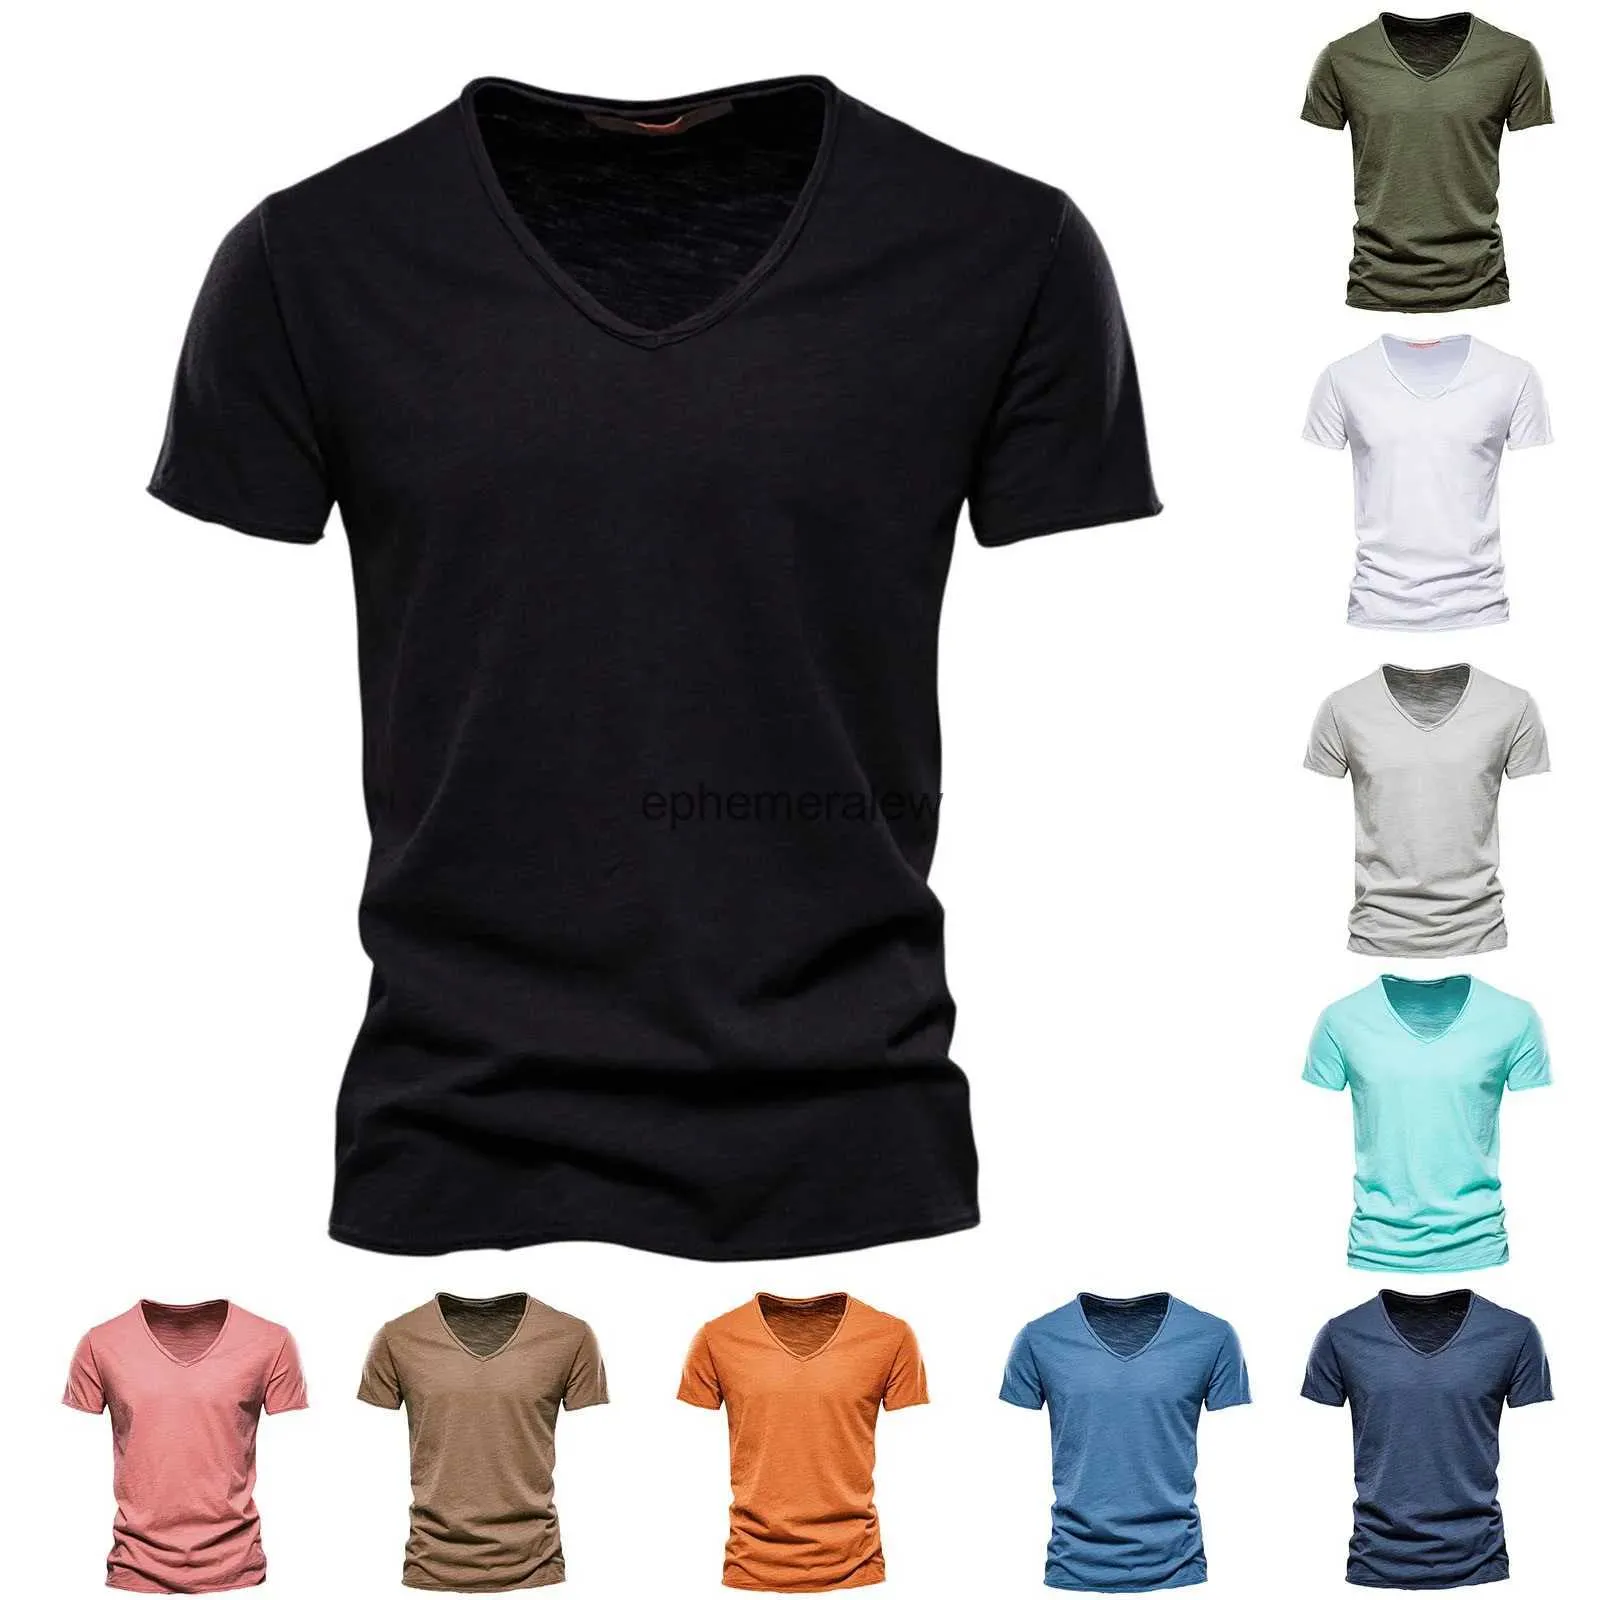 Herren-T-Shirts JAYCOSIN 10 Farben Herrenmode Freizeit-T-Shirts Einfarbige Baumwolle V-Ausschnitt Kurzarm-Oberteil Bequemes, hochwertiges T-Shirt Schnelle LieferungEphemeralew